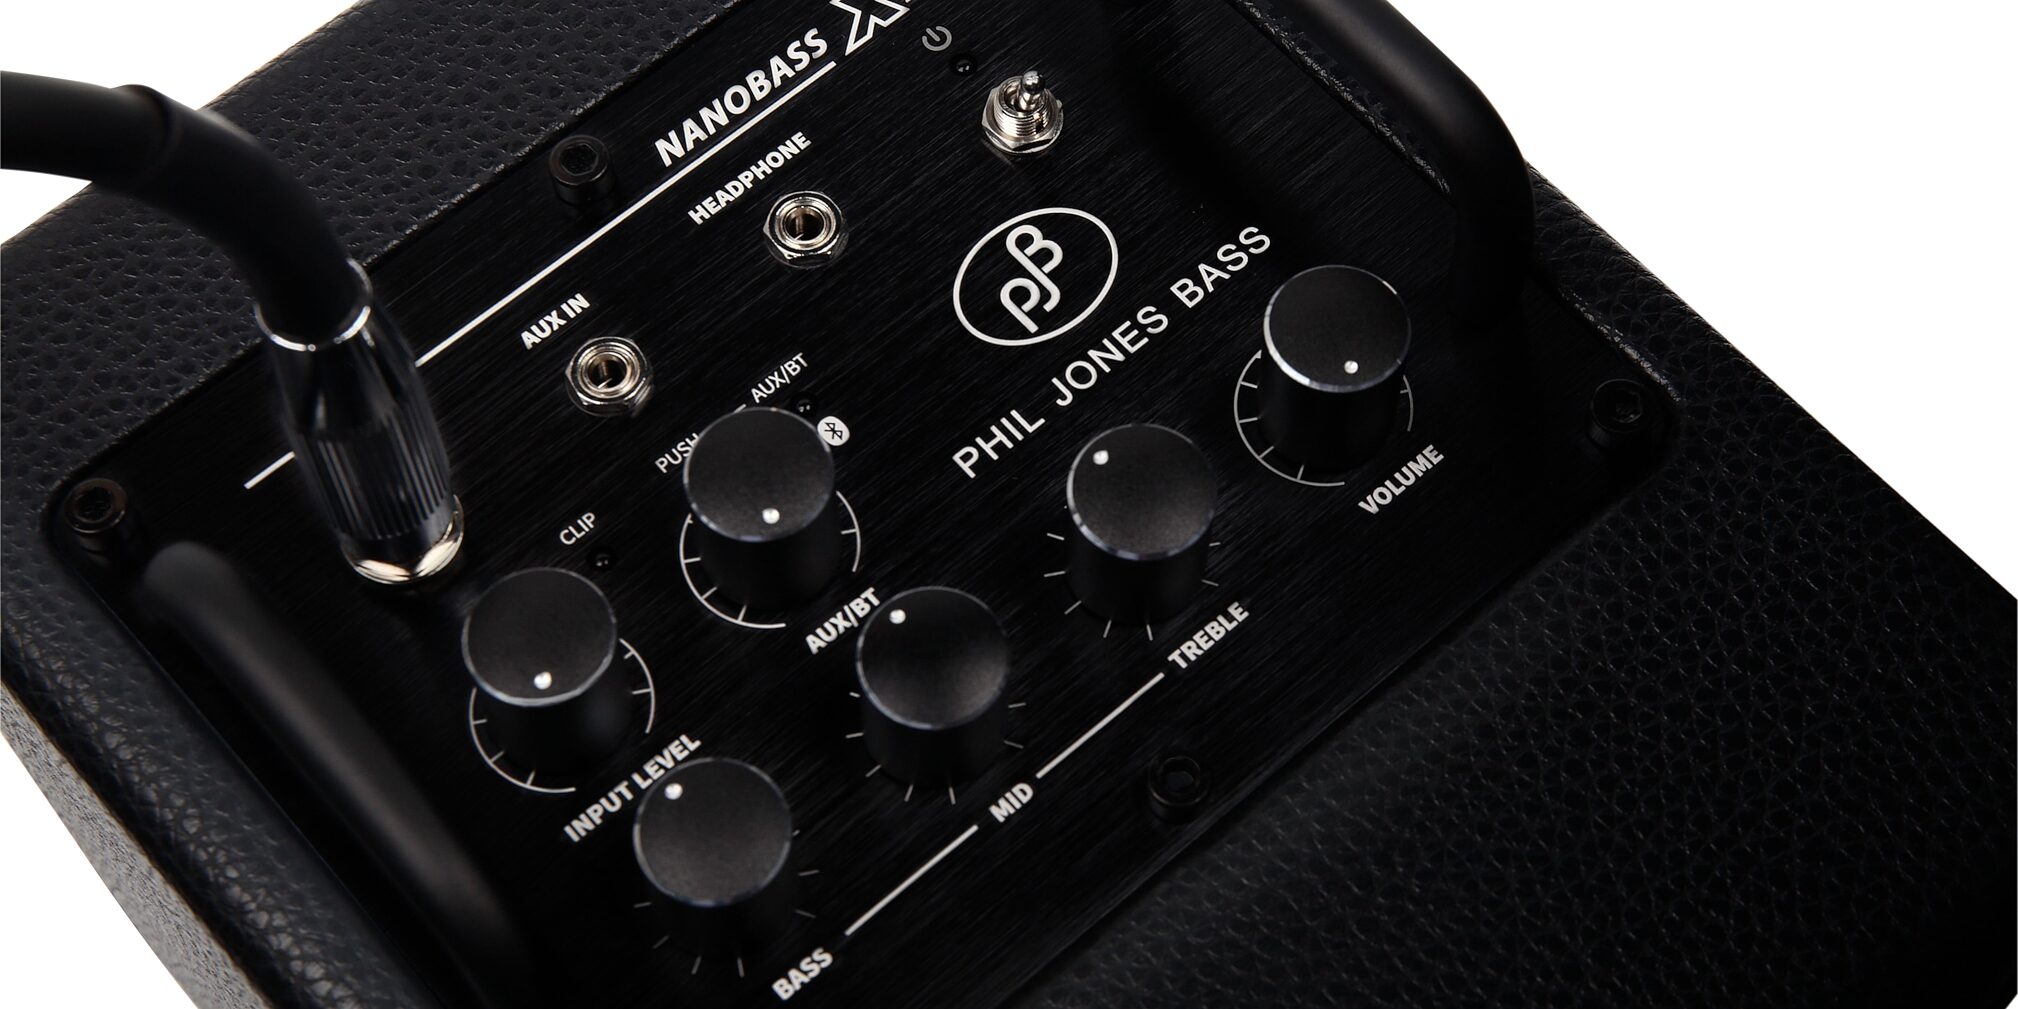 Phil Jones Bass Nanobass X4 Bass Combo Amplifier | zZounds